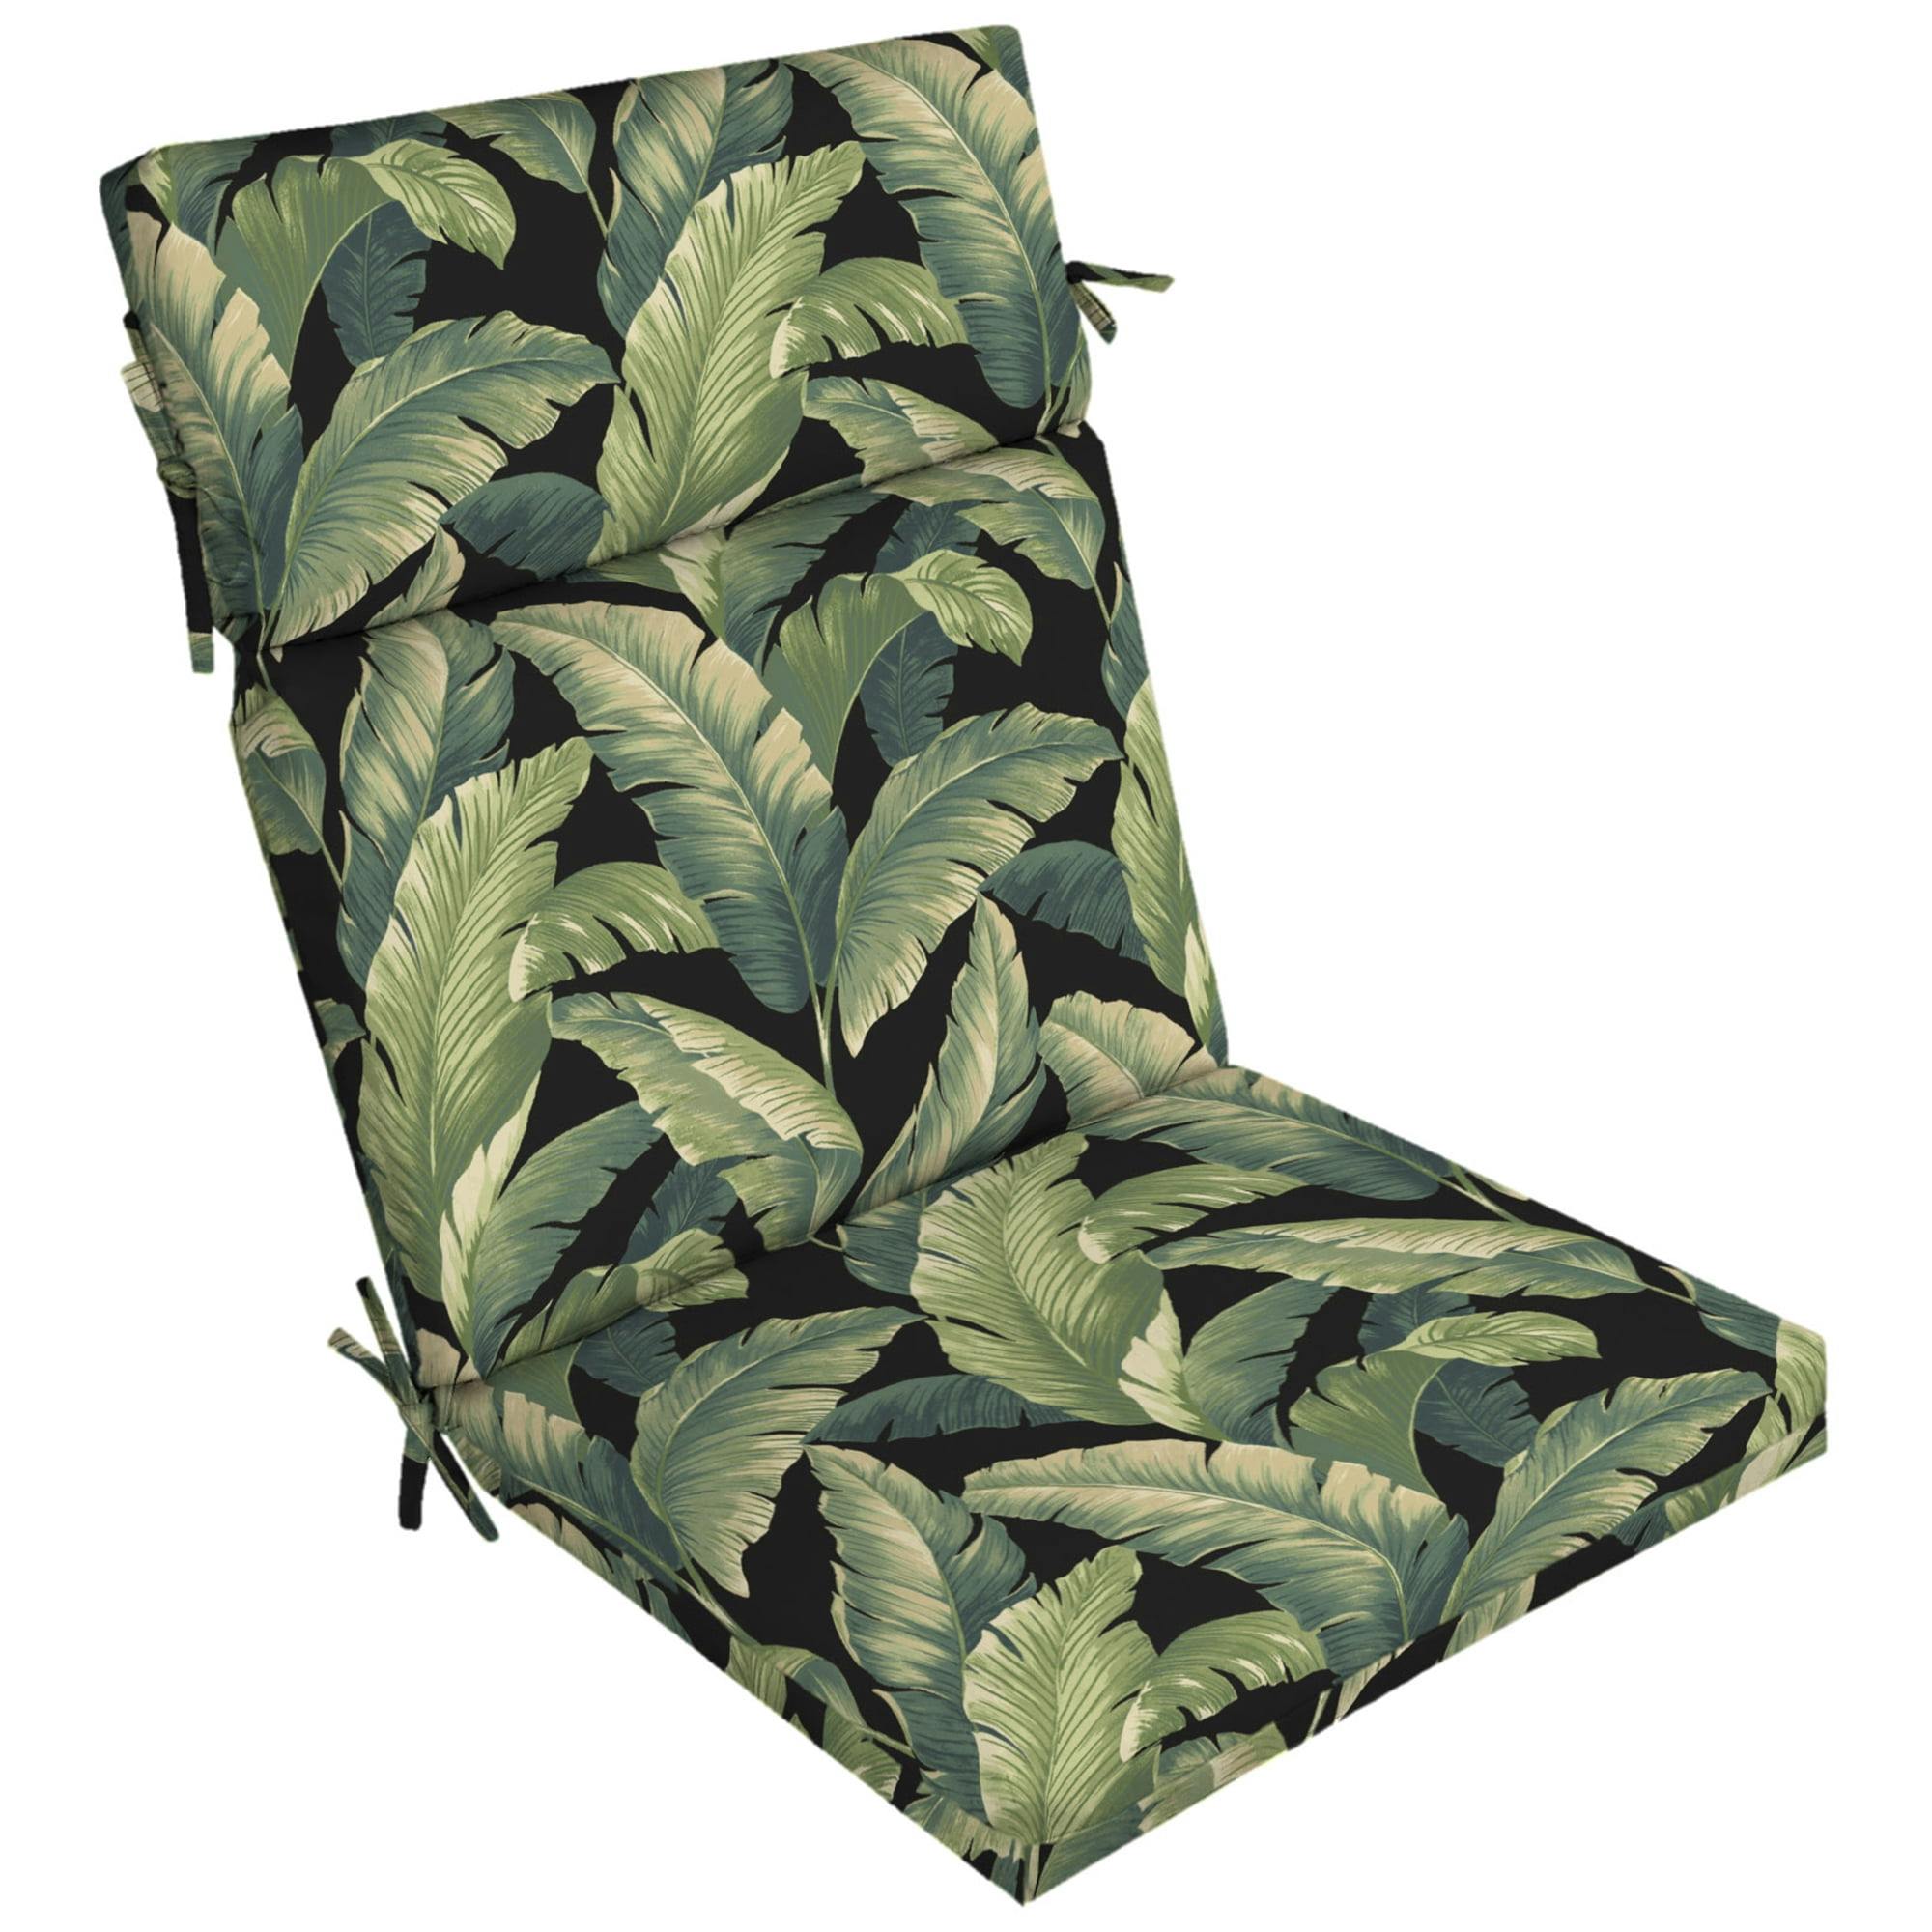 Onyx Cebu Tropical Leaf Pattern Outdoor Dining Chair Cushion